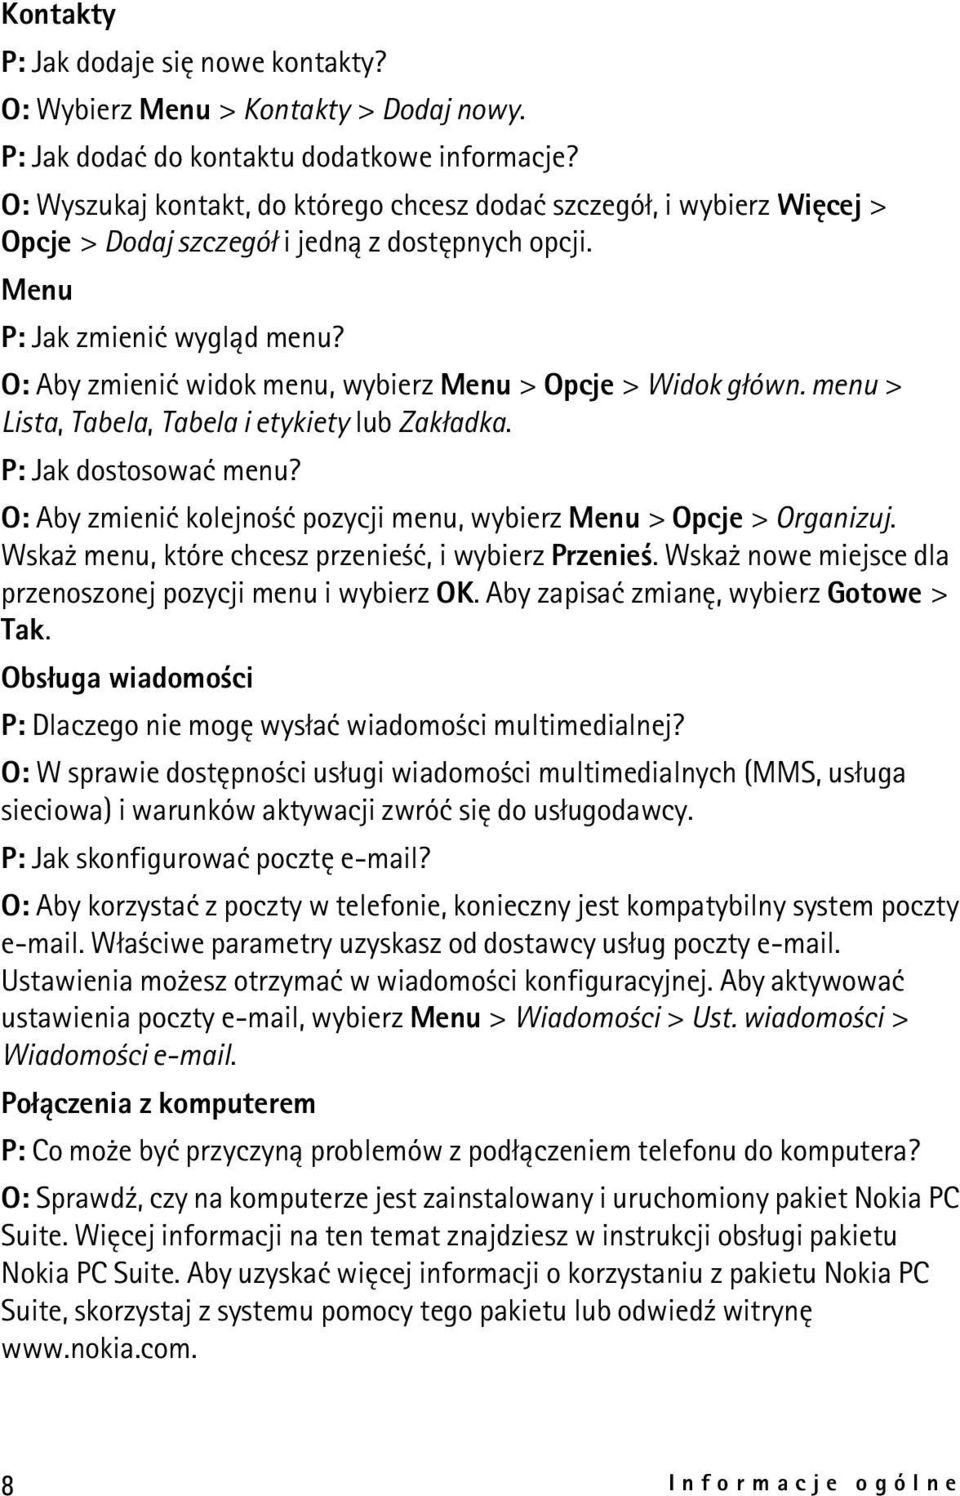 O: Aby zmieniæ widok menu, wybierz Menu > Opcje > Widok g³ówn. menu > Lista, Tabela, Tabela i etykiety lub Zak³adka. P: Jak dostosowaæ menu?